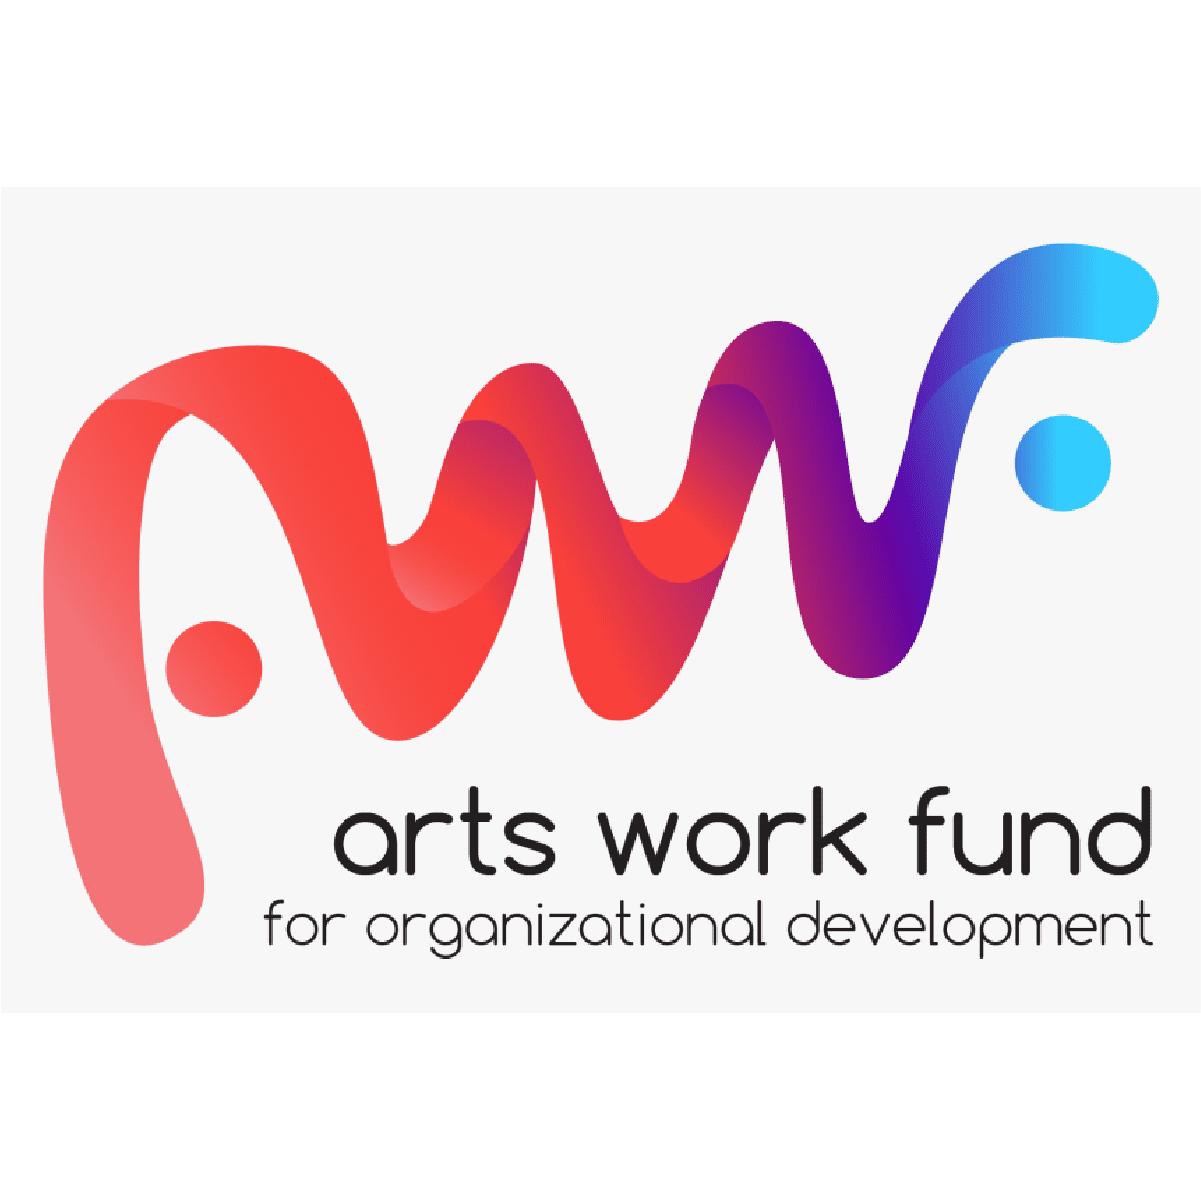 Arts work fund logo